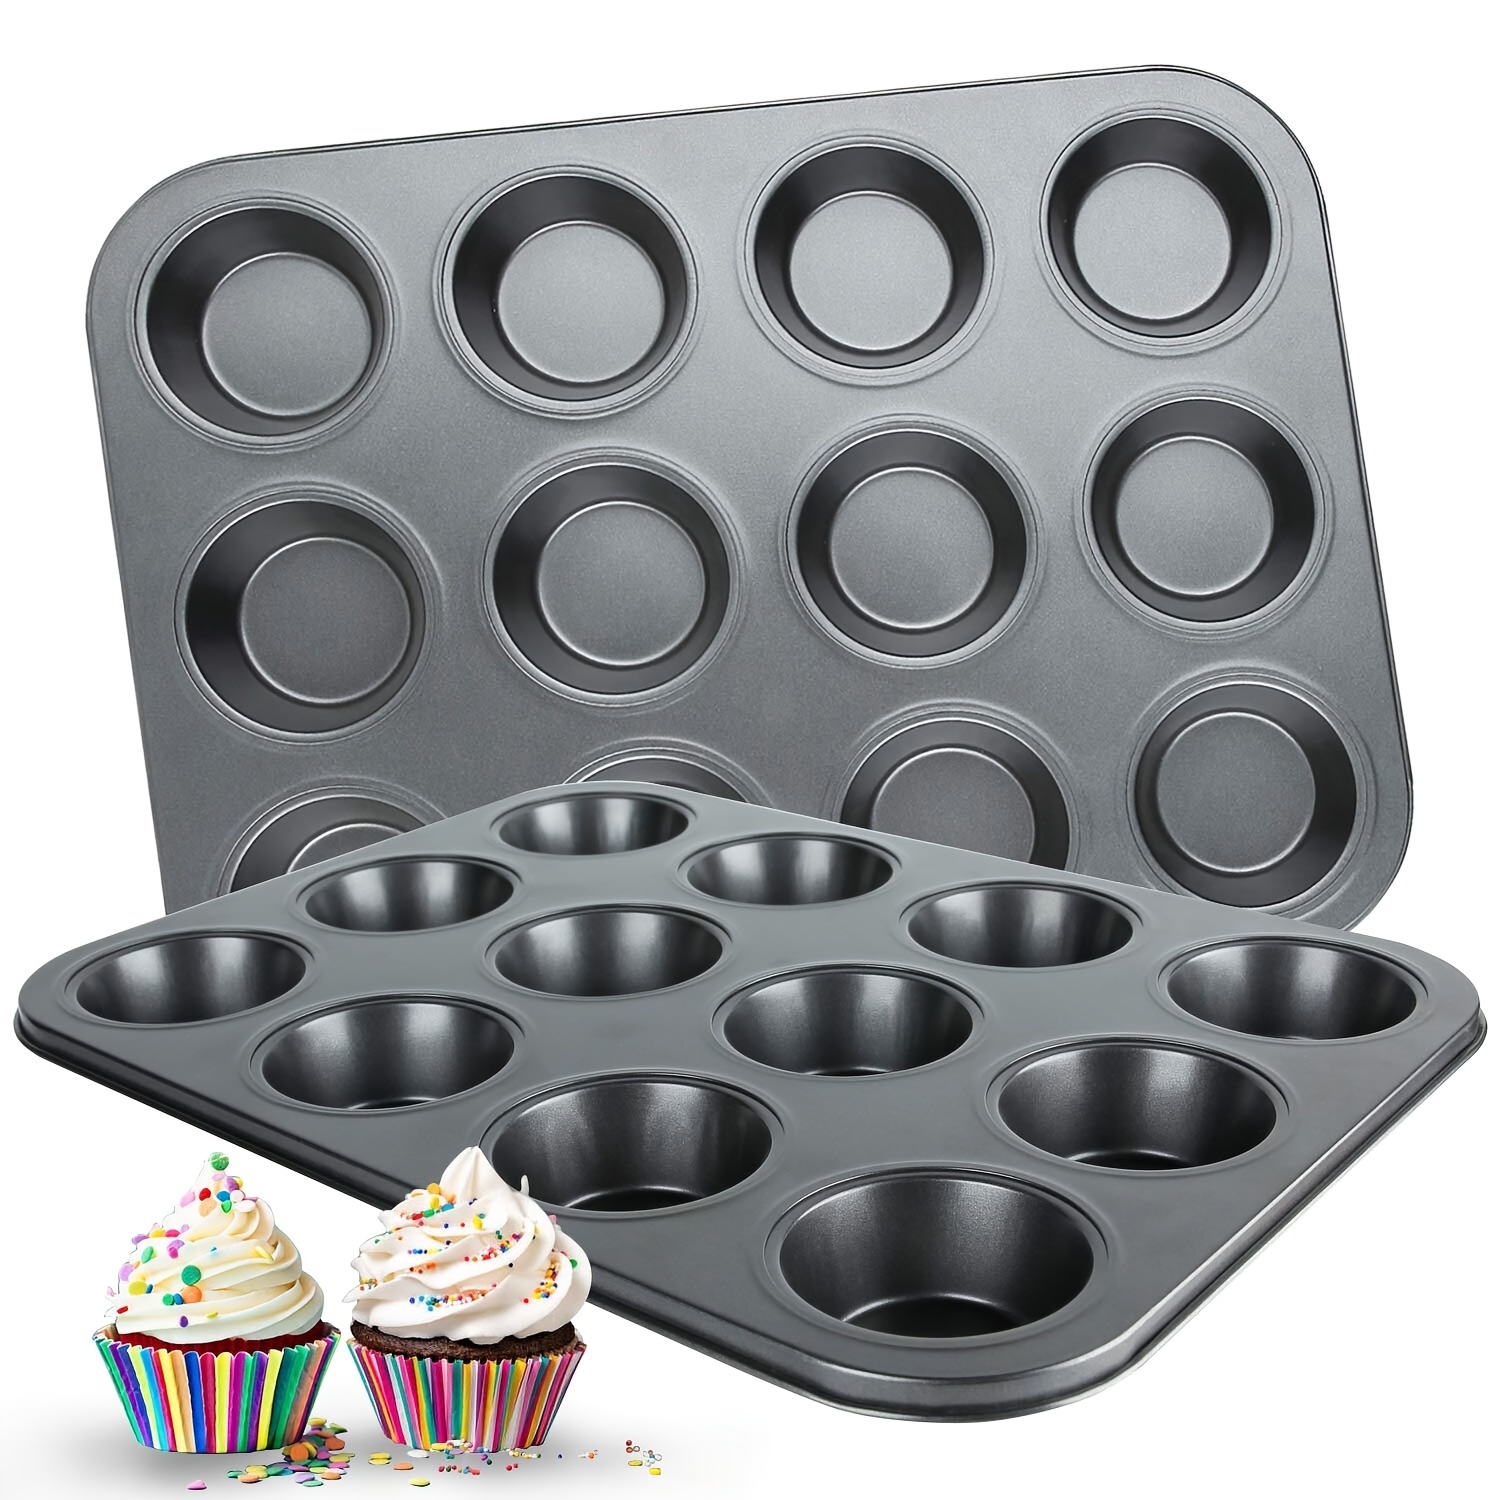 Plateau pour la cuisson de muffins assiette + 12 moules en silicone